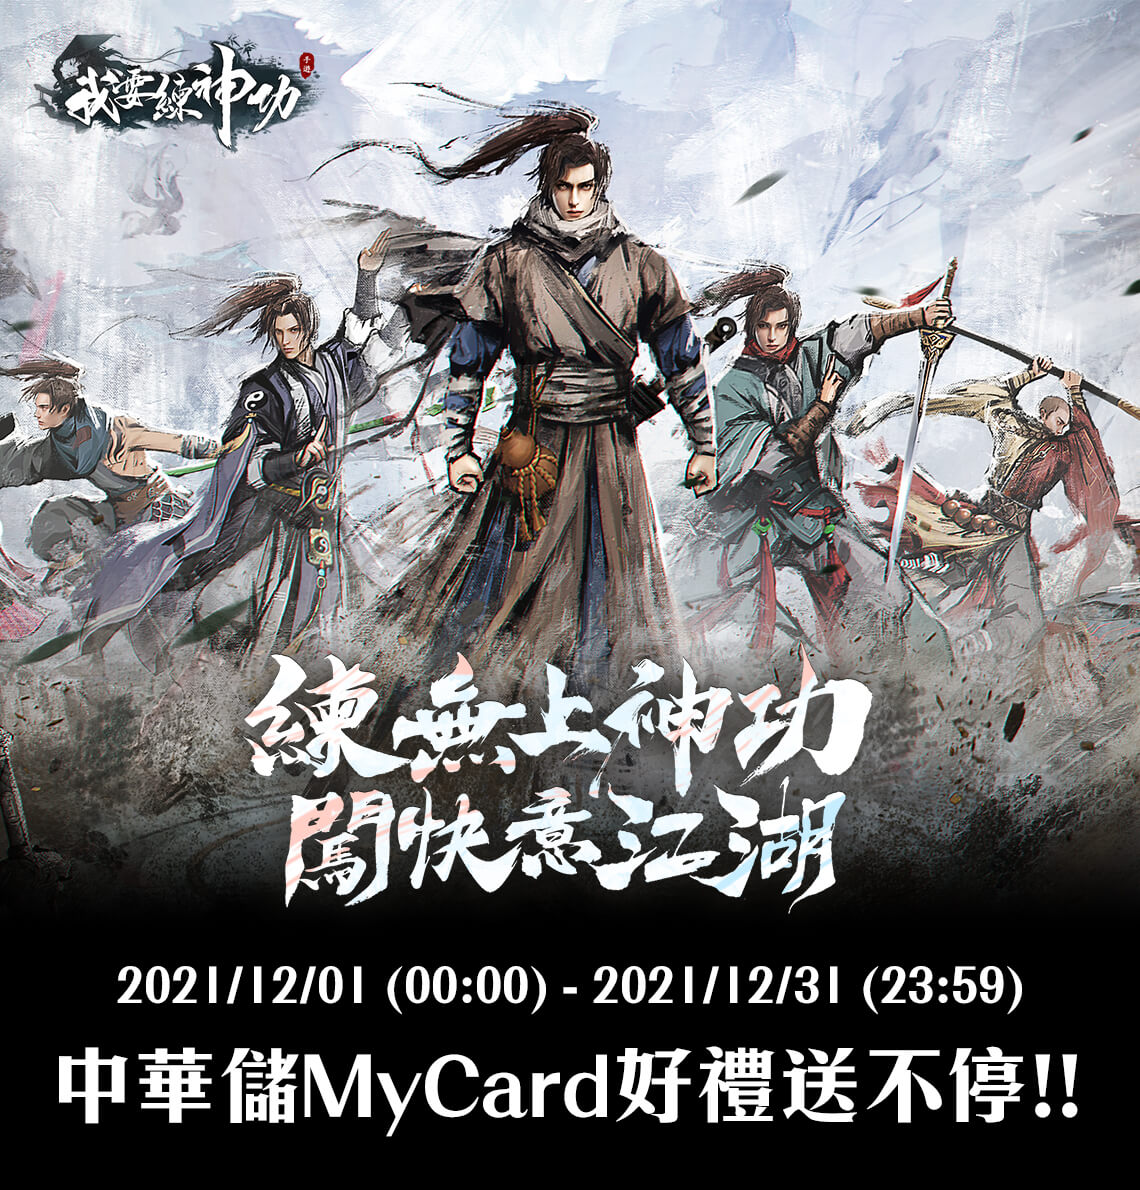   《我要練神功》MyCard儲值享超值好禮回饋 | 中華電信